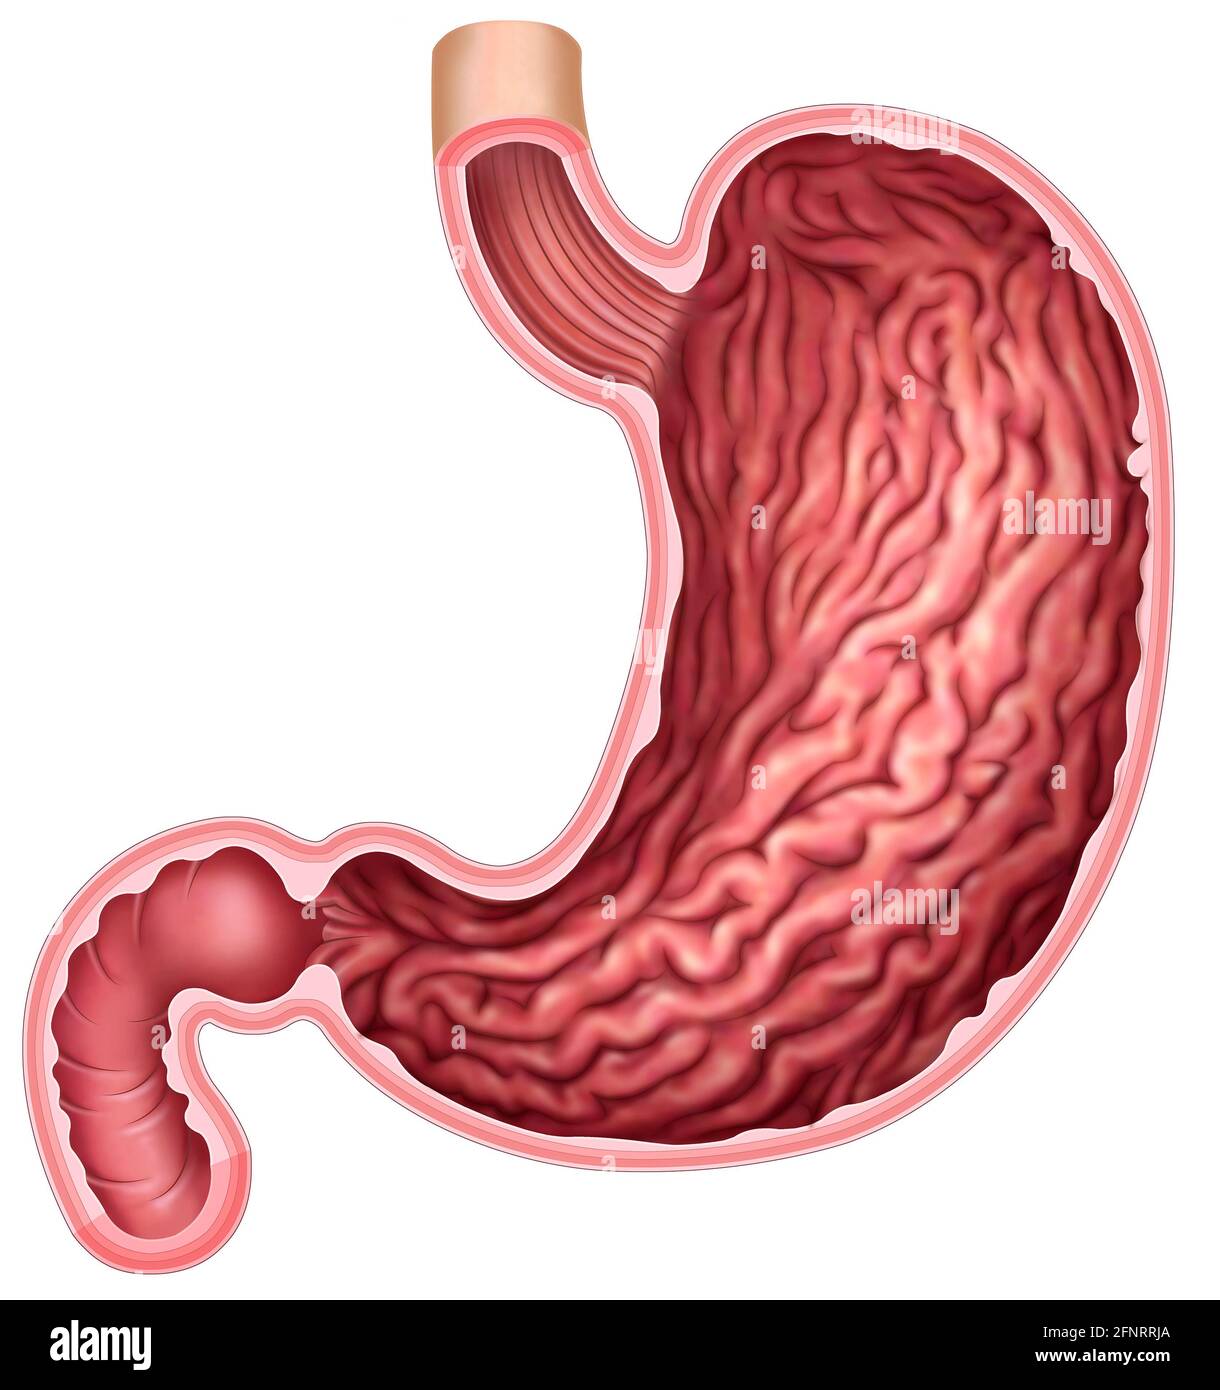 Illustration und Anatomie des menschlichen Magens. Der Magen ist ein Teil des Verdauungssystems, es geht um die Zerschlagung und Mahlen von Lebensmitteln. Stockfoto